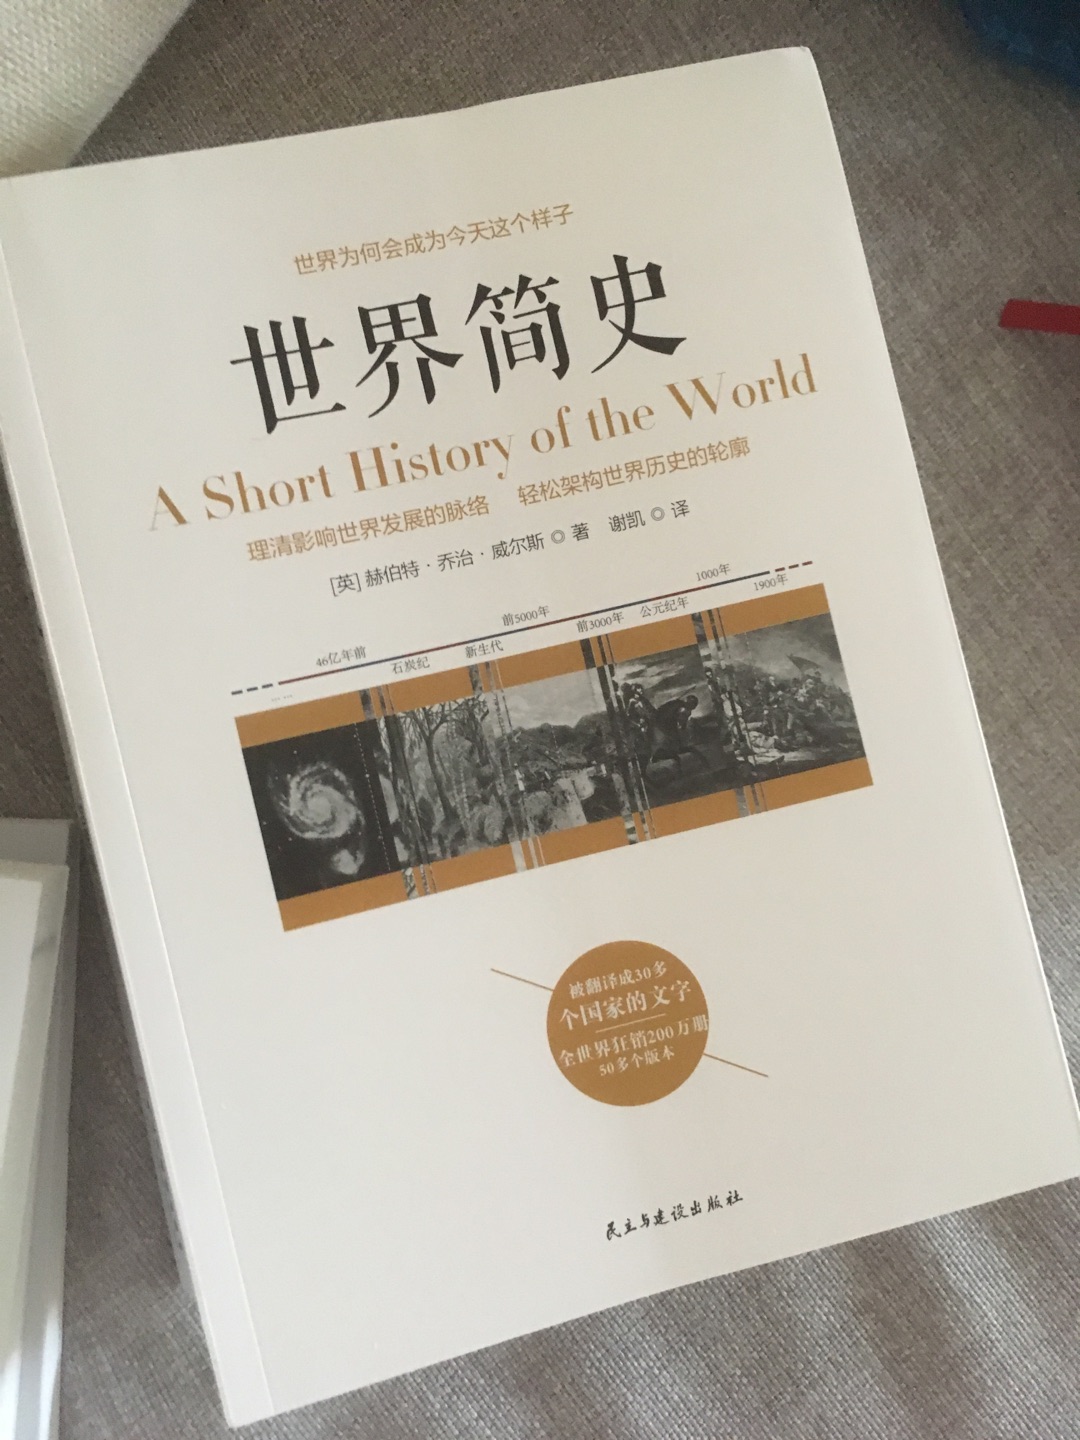 老刘的书基本凑齐了，怎么说呢，这是一套非常适合普及北京文化生活的丛书，非常适合各阶层人士阅读，物超所值！